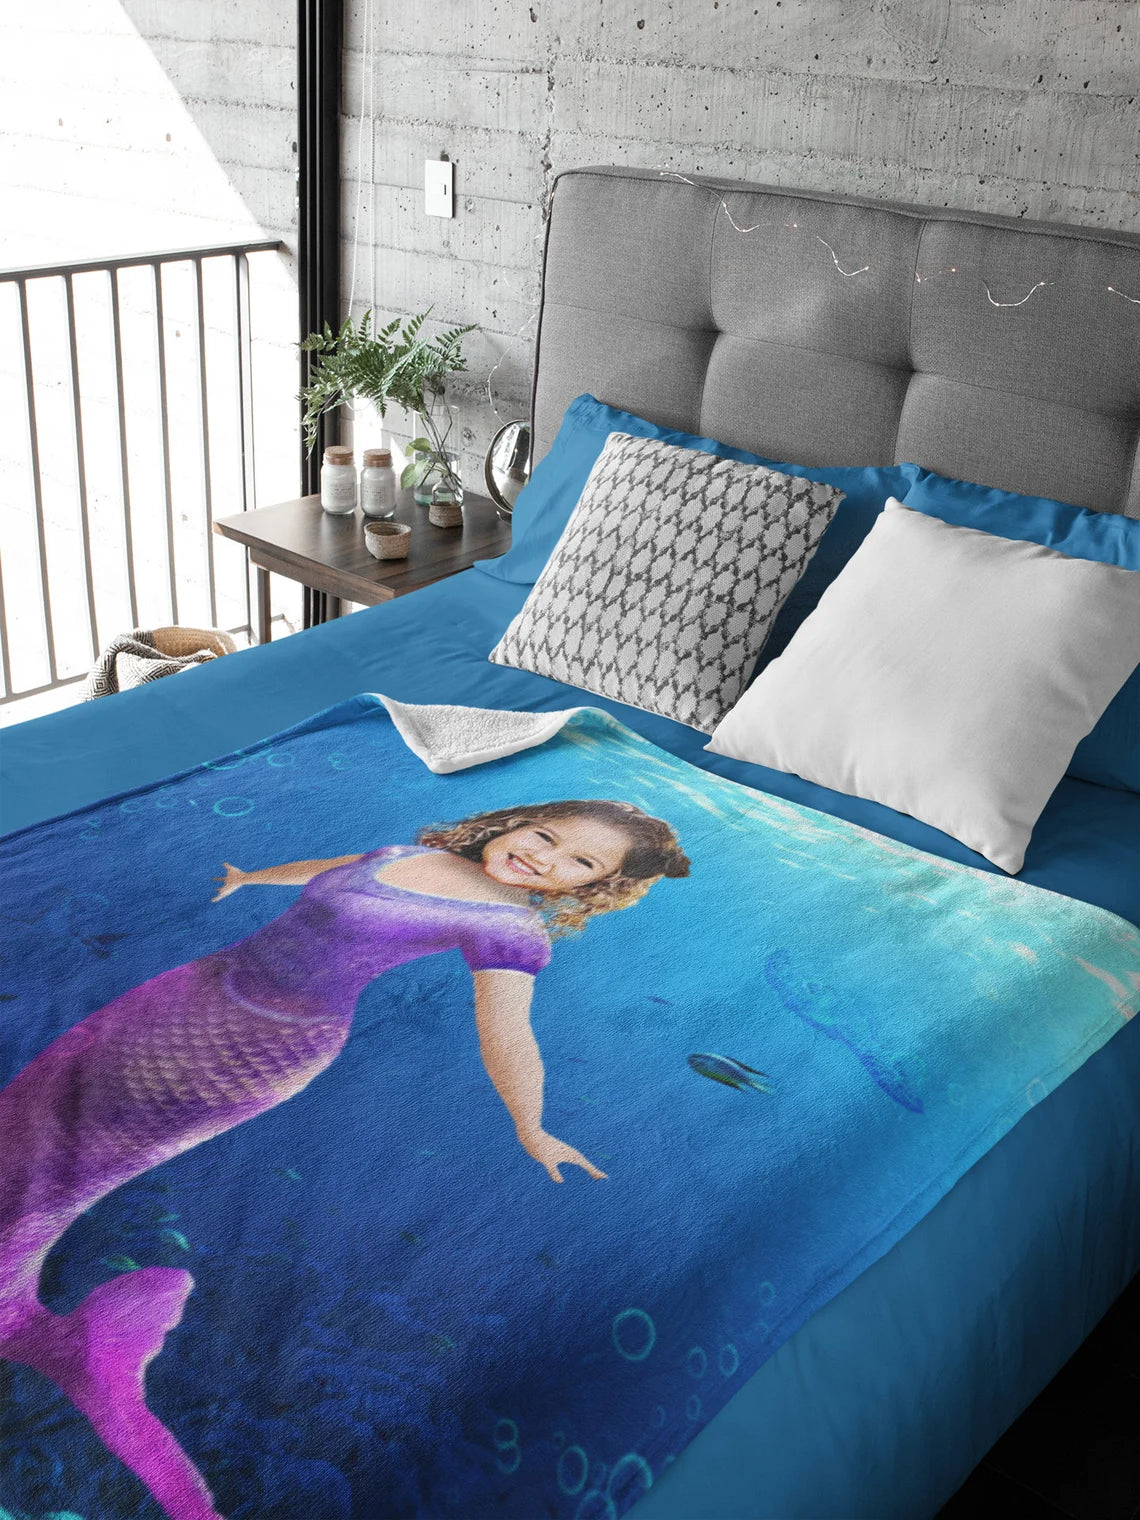 The Mermaid Blanket